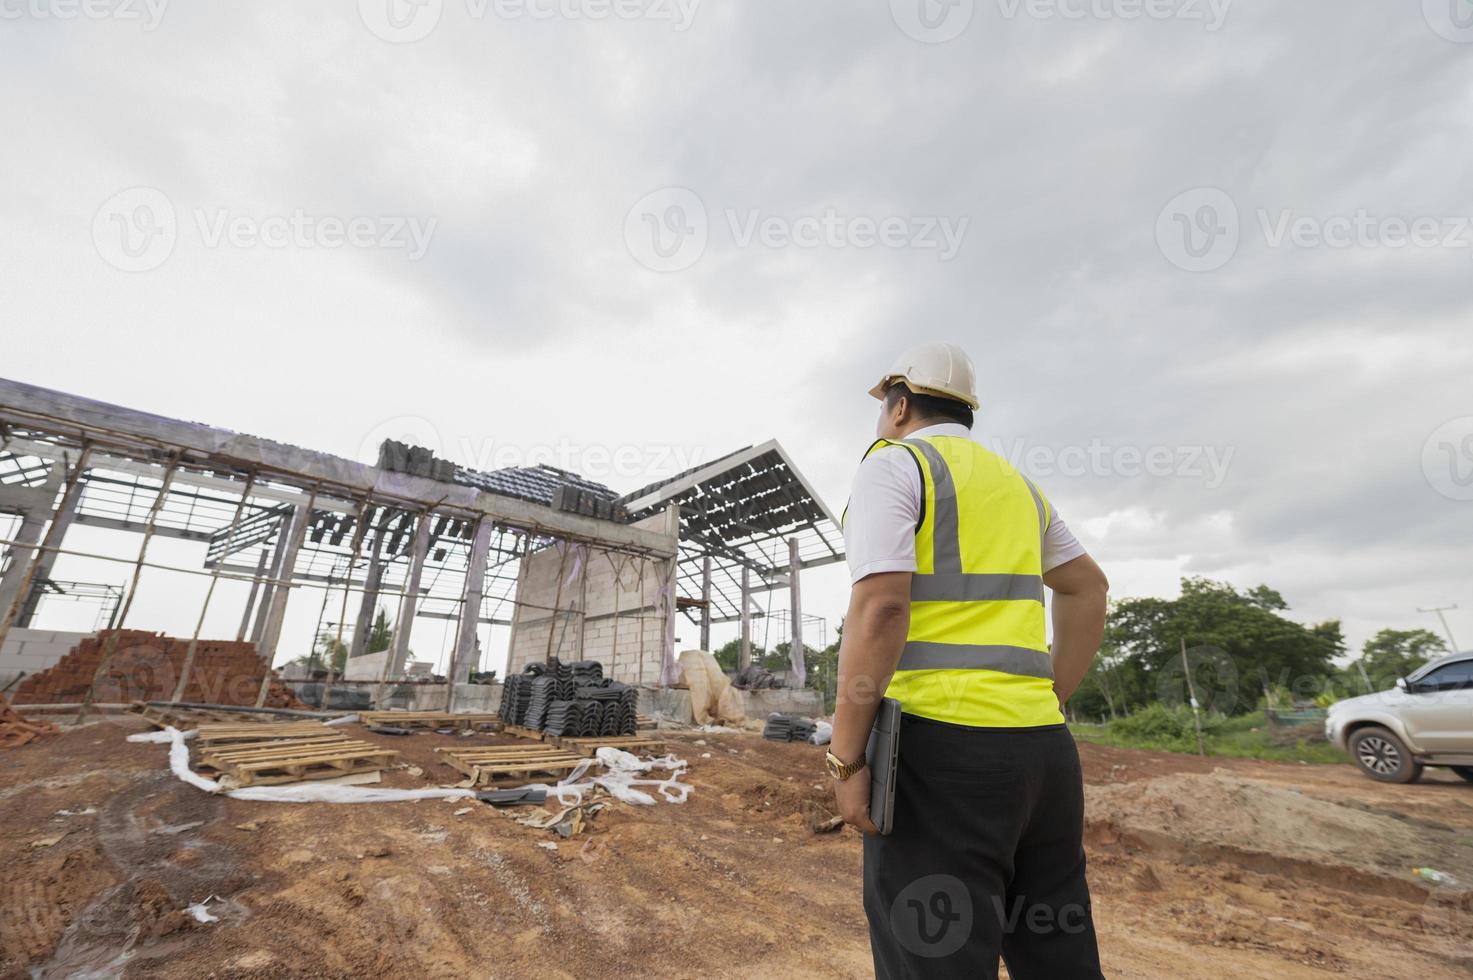 ingenieros y arquitectos supervisan la construcción de casas en sitios de construcción residencial. foto